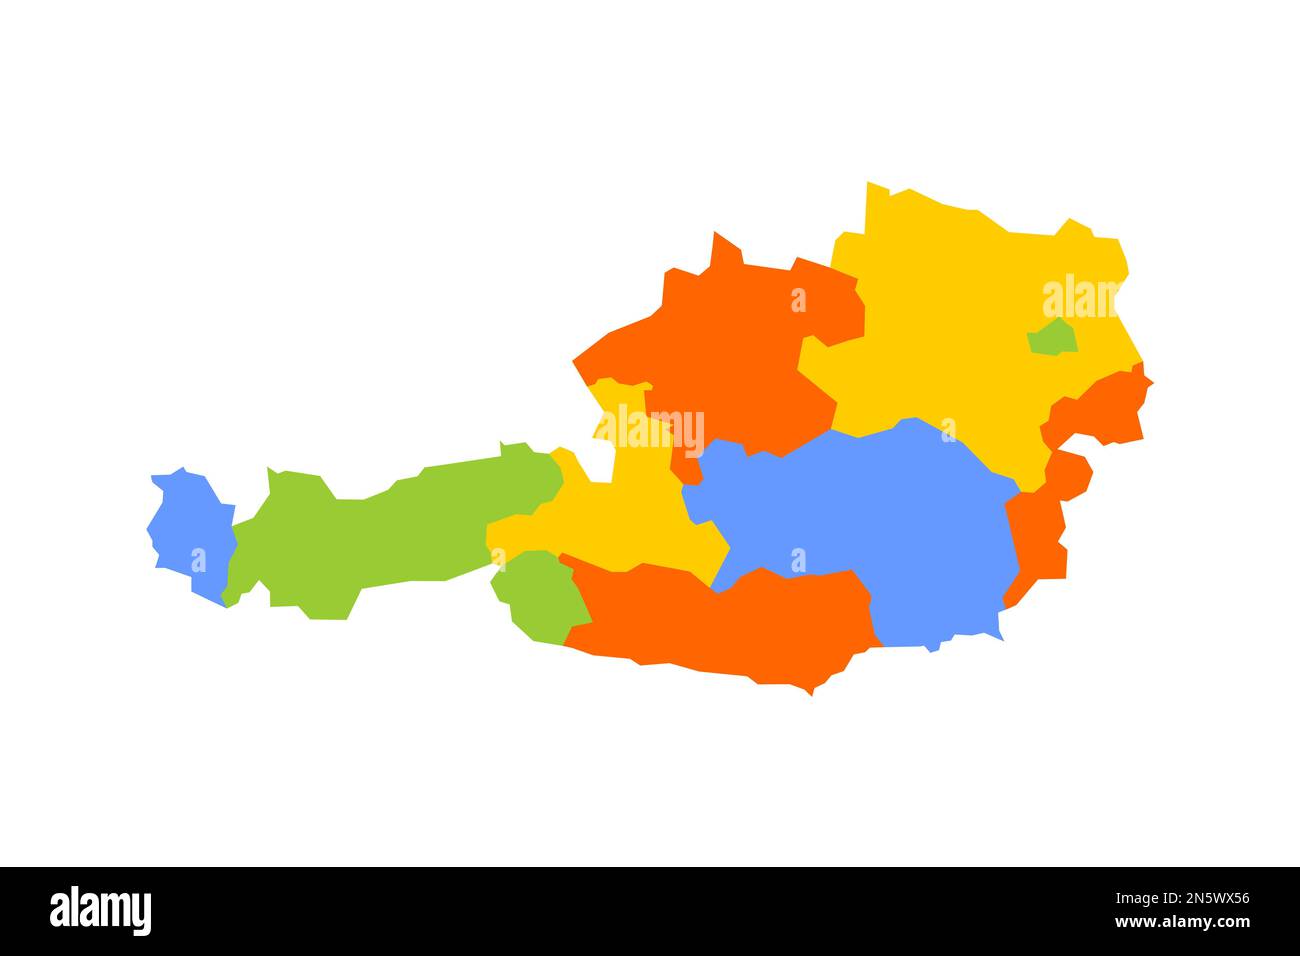 Osterreichische politische Karte der Verwaltungsabteilungen - Bundesländer. Leere farbige Vektorkarte. Stock Vektor